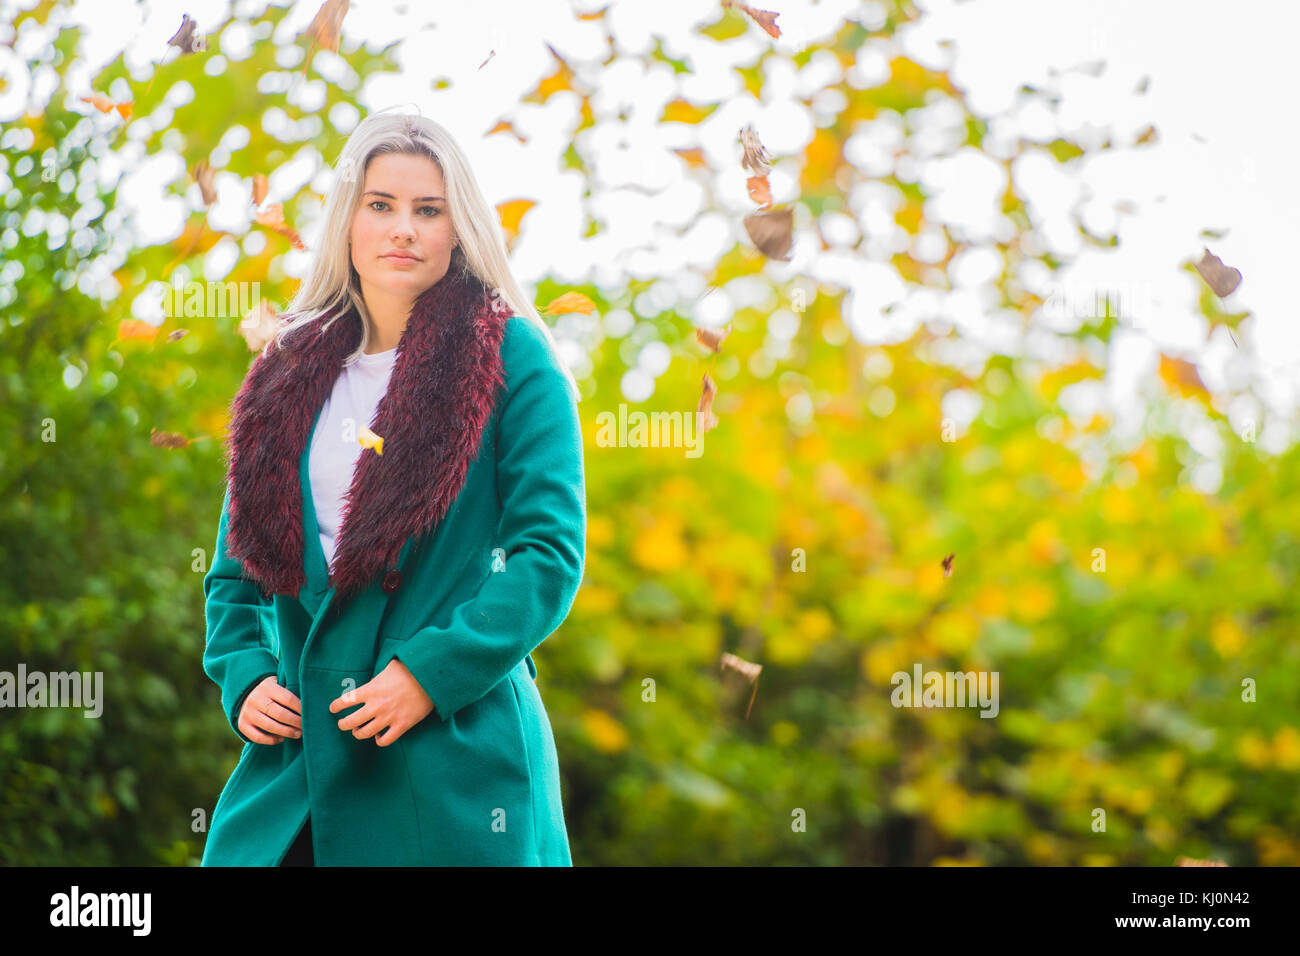 Jugendmädchen Modellierung in Großbritannien: Eine junge 16 jährige Pubertierende, trug einen Pelzbesatz grünen Mantel, modeling Posing im Freien an einem Herbsttag, Großbritannien Stockfoto